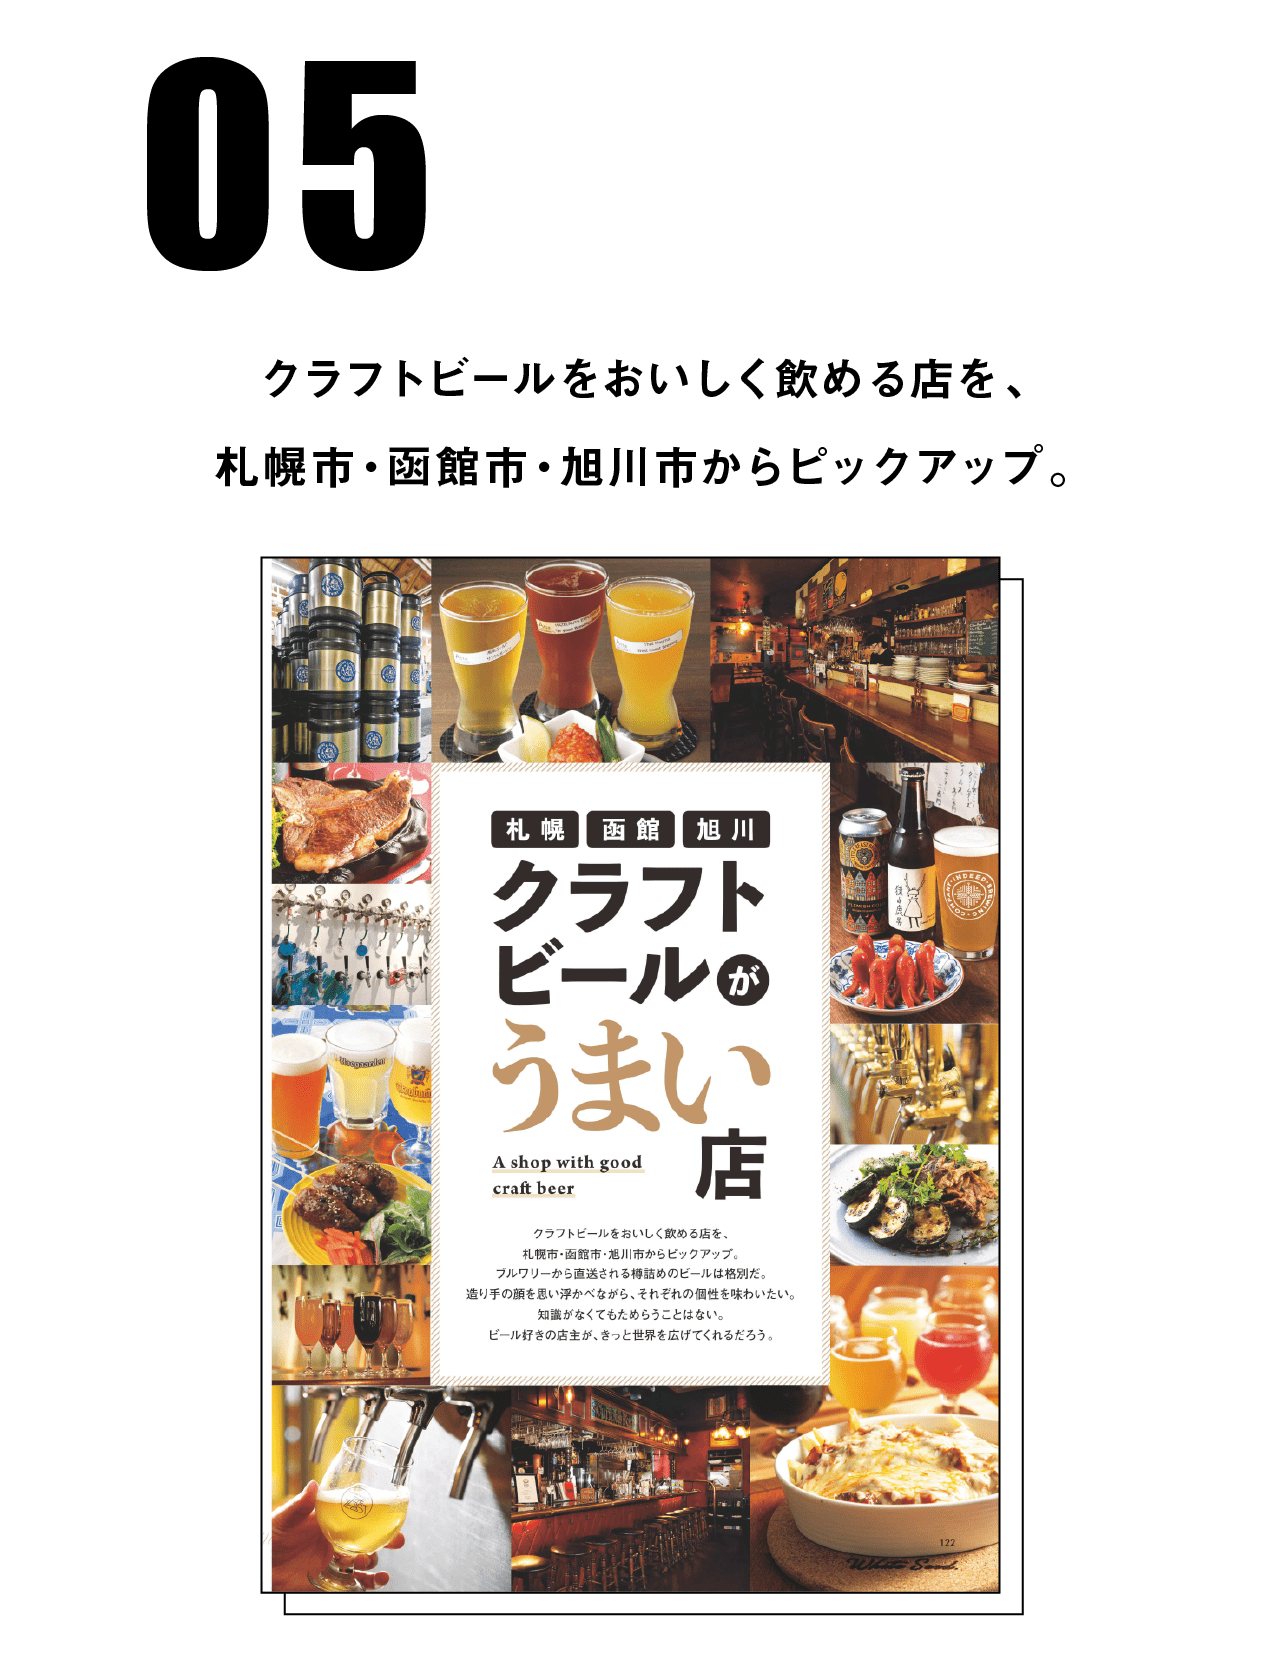 クラフトビールをおいしく飲める店を、札幌市・函館市・旭川市からピックアップ。